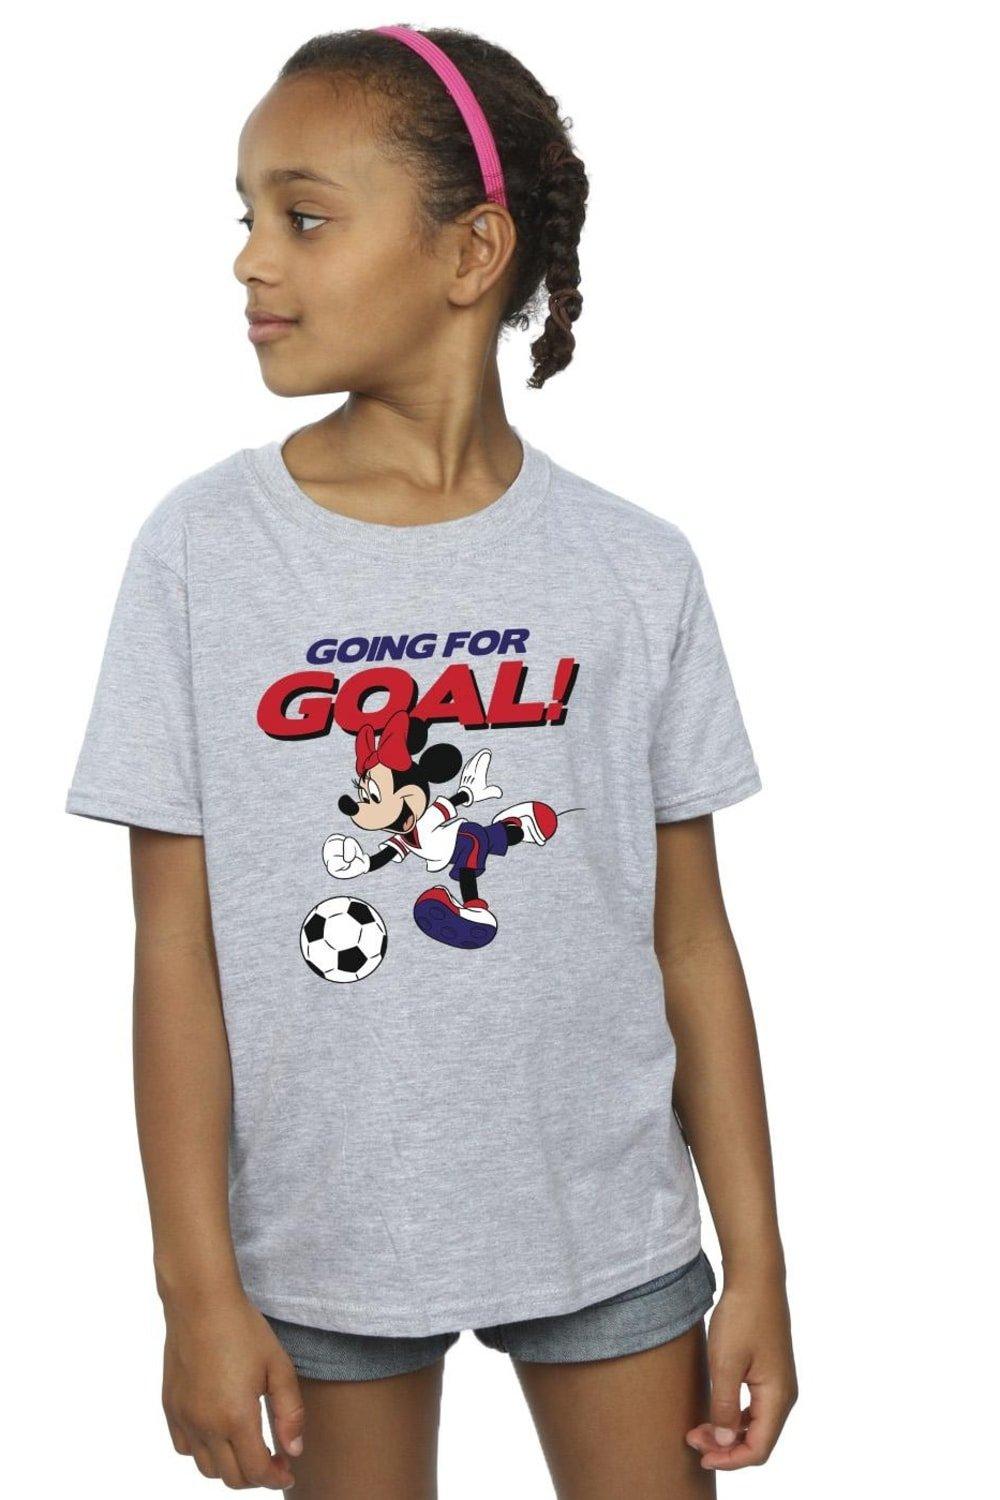 Хлопковая футболка «Минни Маус идет к цели» Disney, серый